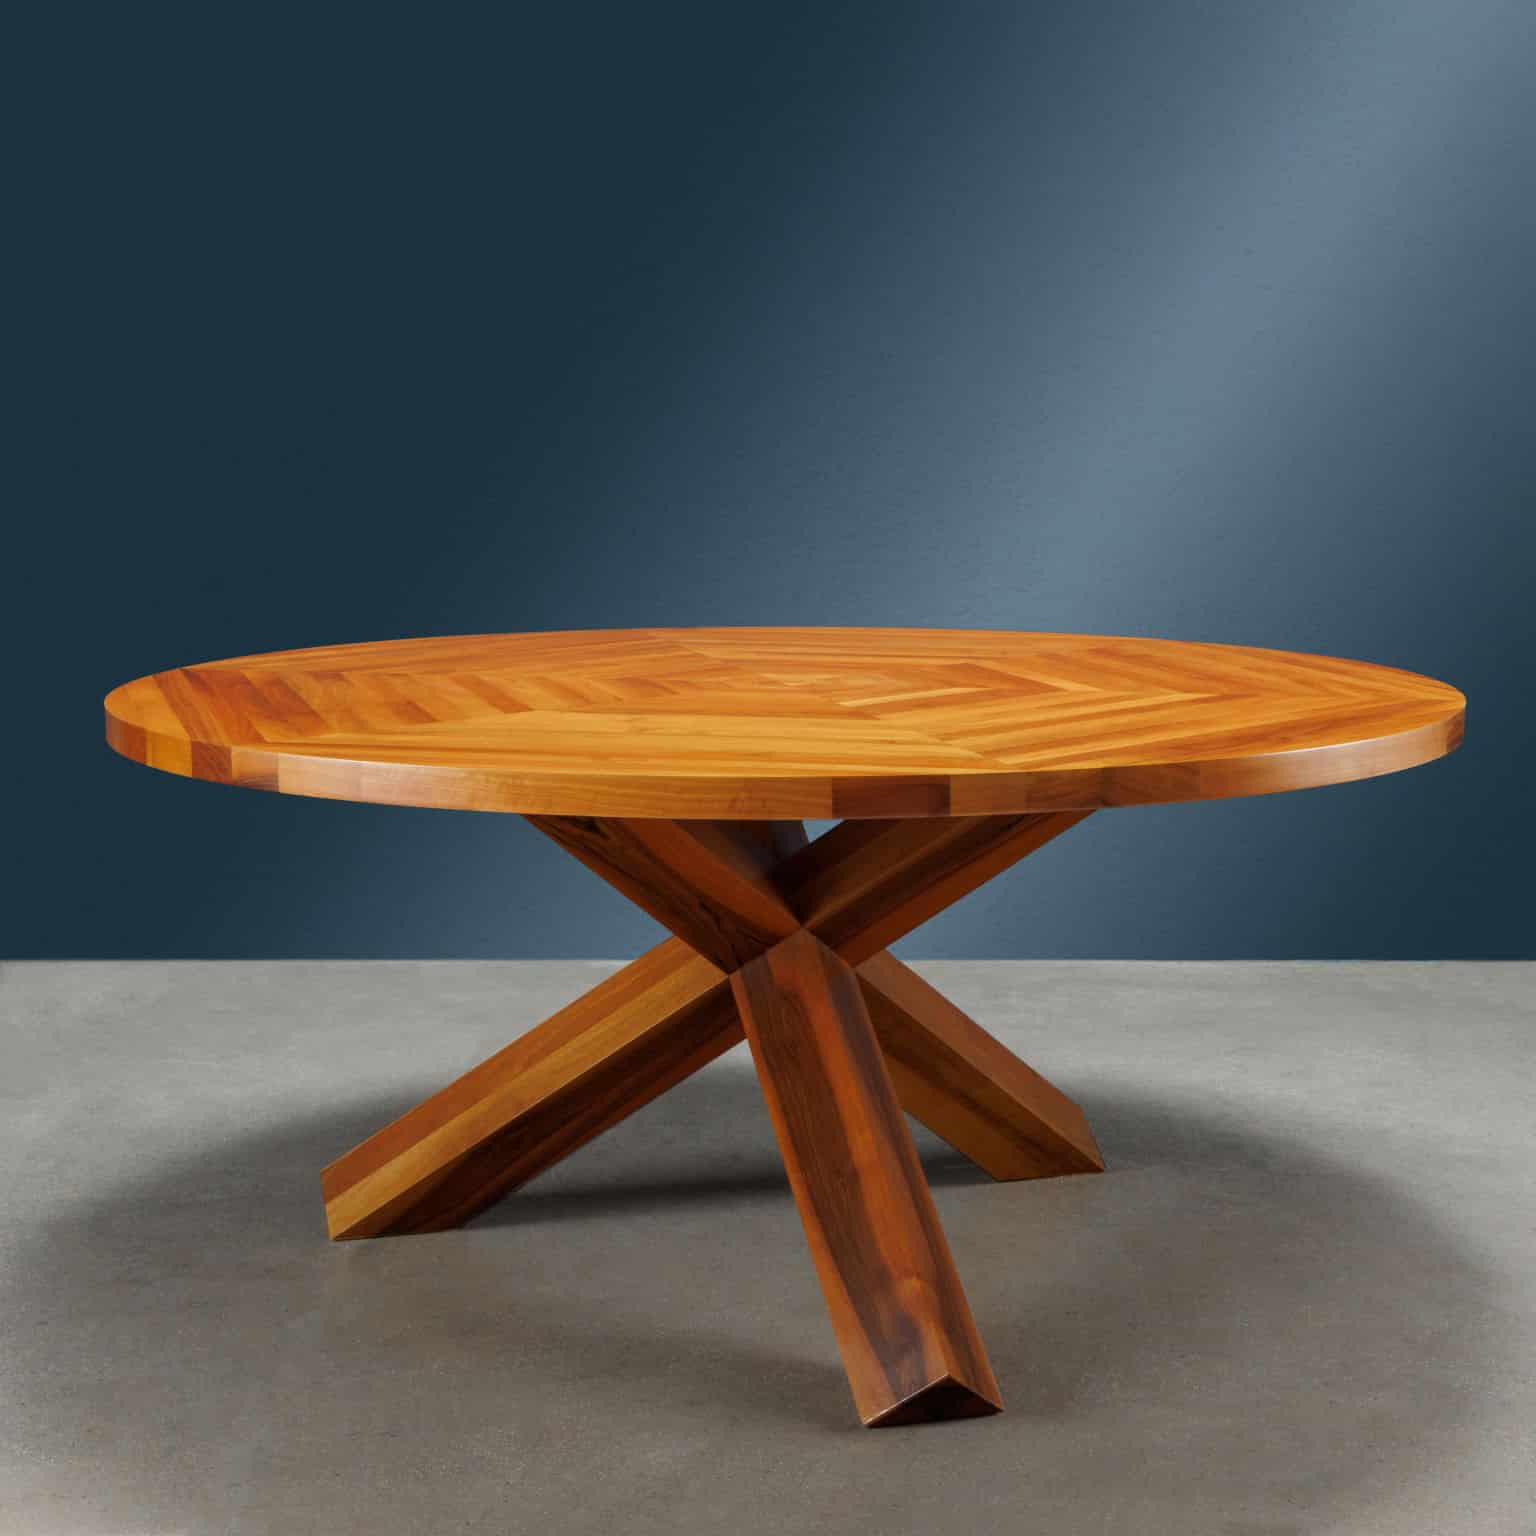 Mario Bellini ‘La Rotonda’ table for Cassina